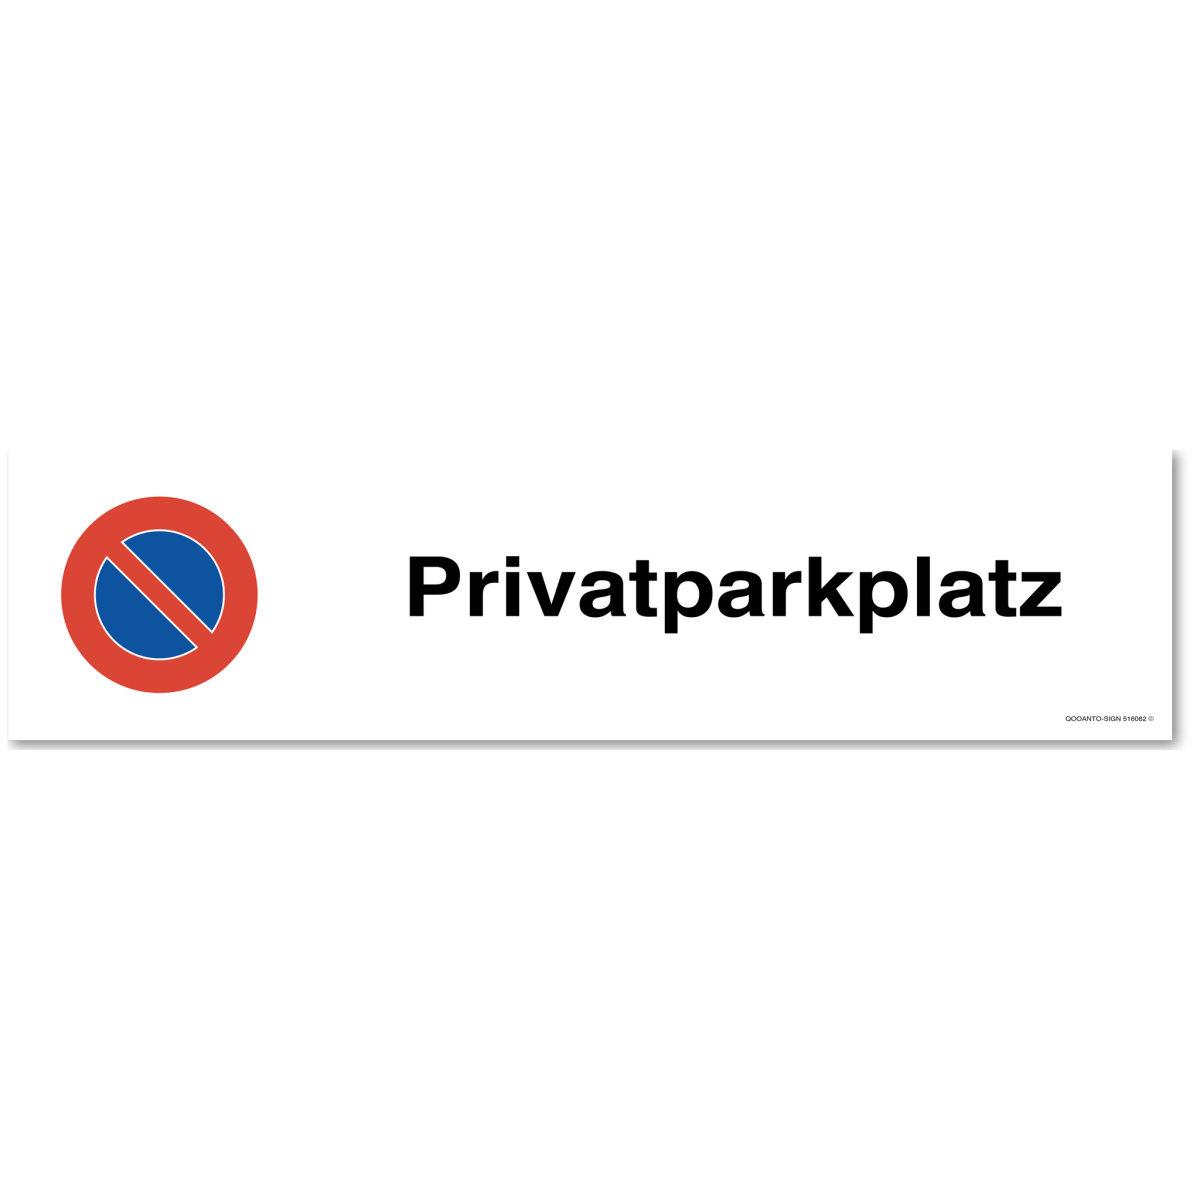 Parkplatz Parkverbotsschild oder Aufkleber, Privatparkplatz, aus Alu-Verbund oder Selbstklebefolie mit UV-Schutz - QOOANTO-SIGN